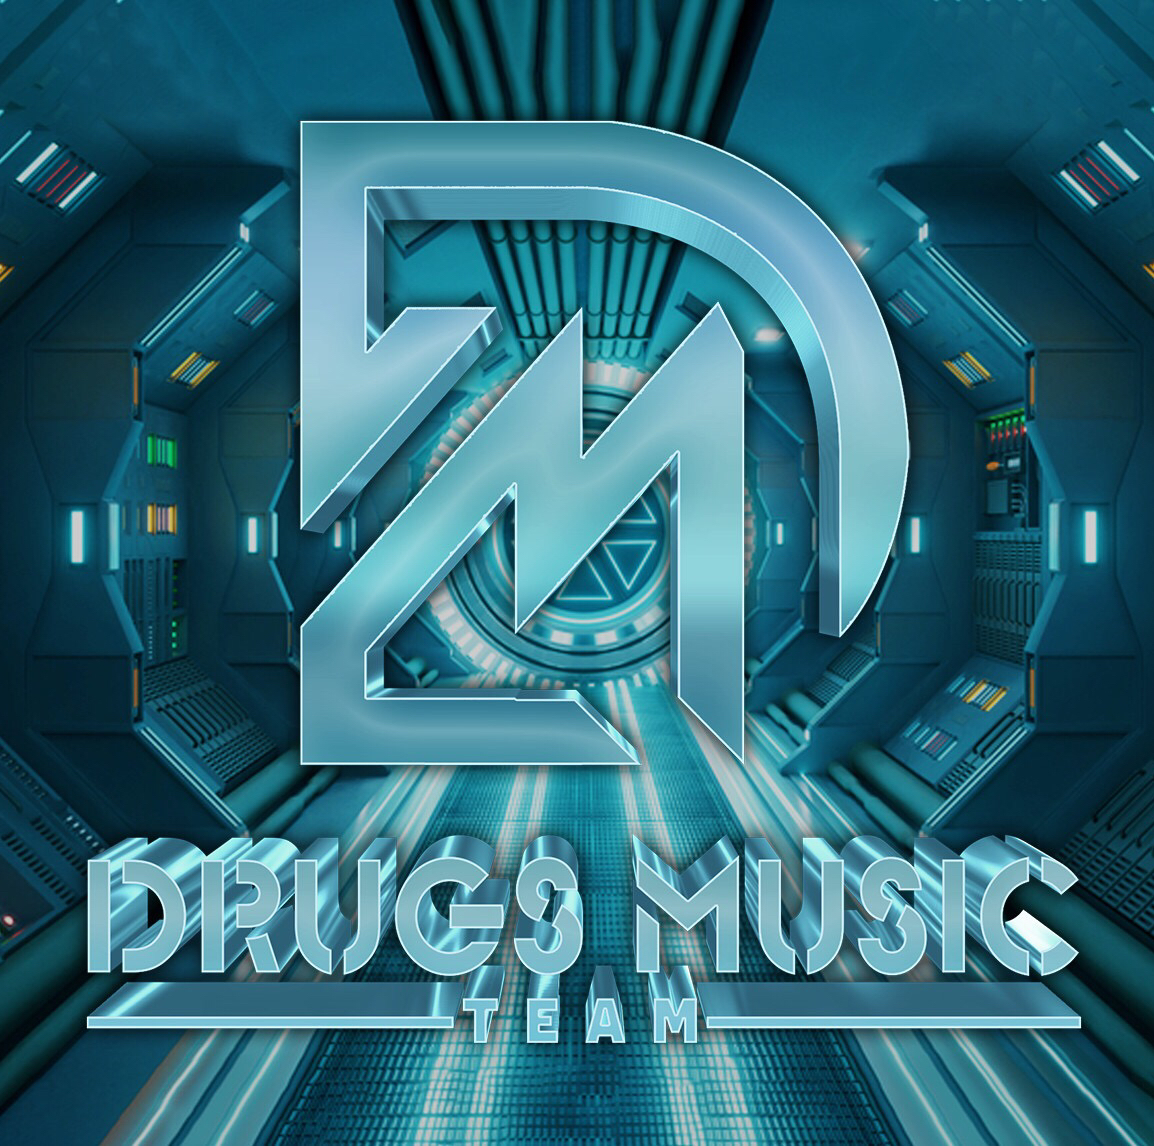 Sii mai Bên Trên Tầng Lầu - Tài Dola x Tbynz (Drugs Music Team)